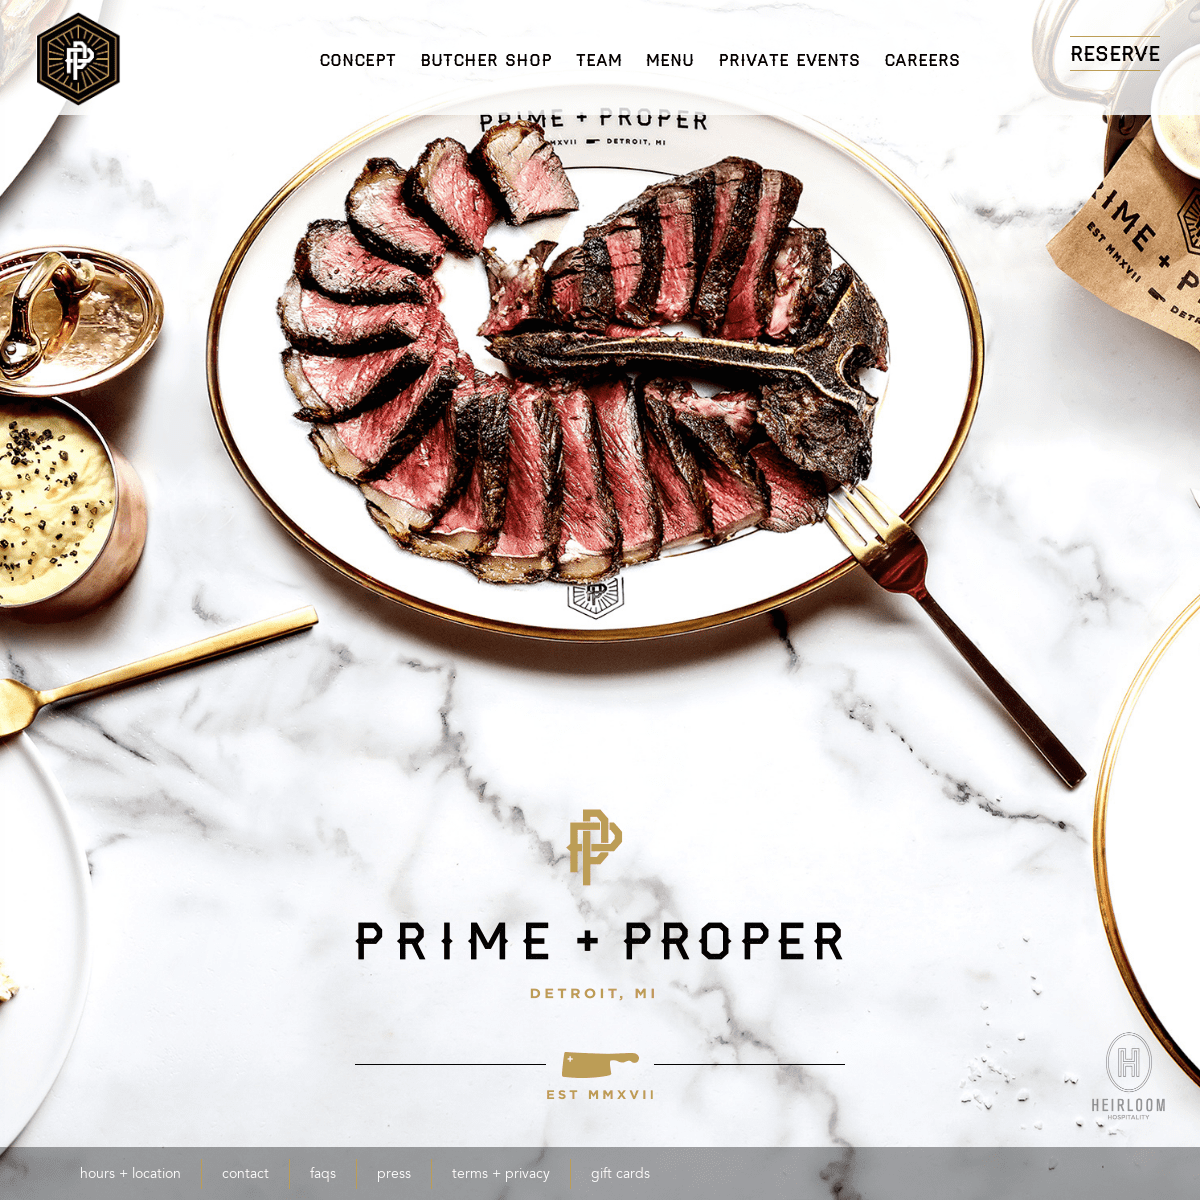 Steakhouse in Detroit, MI - Prime + Proper